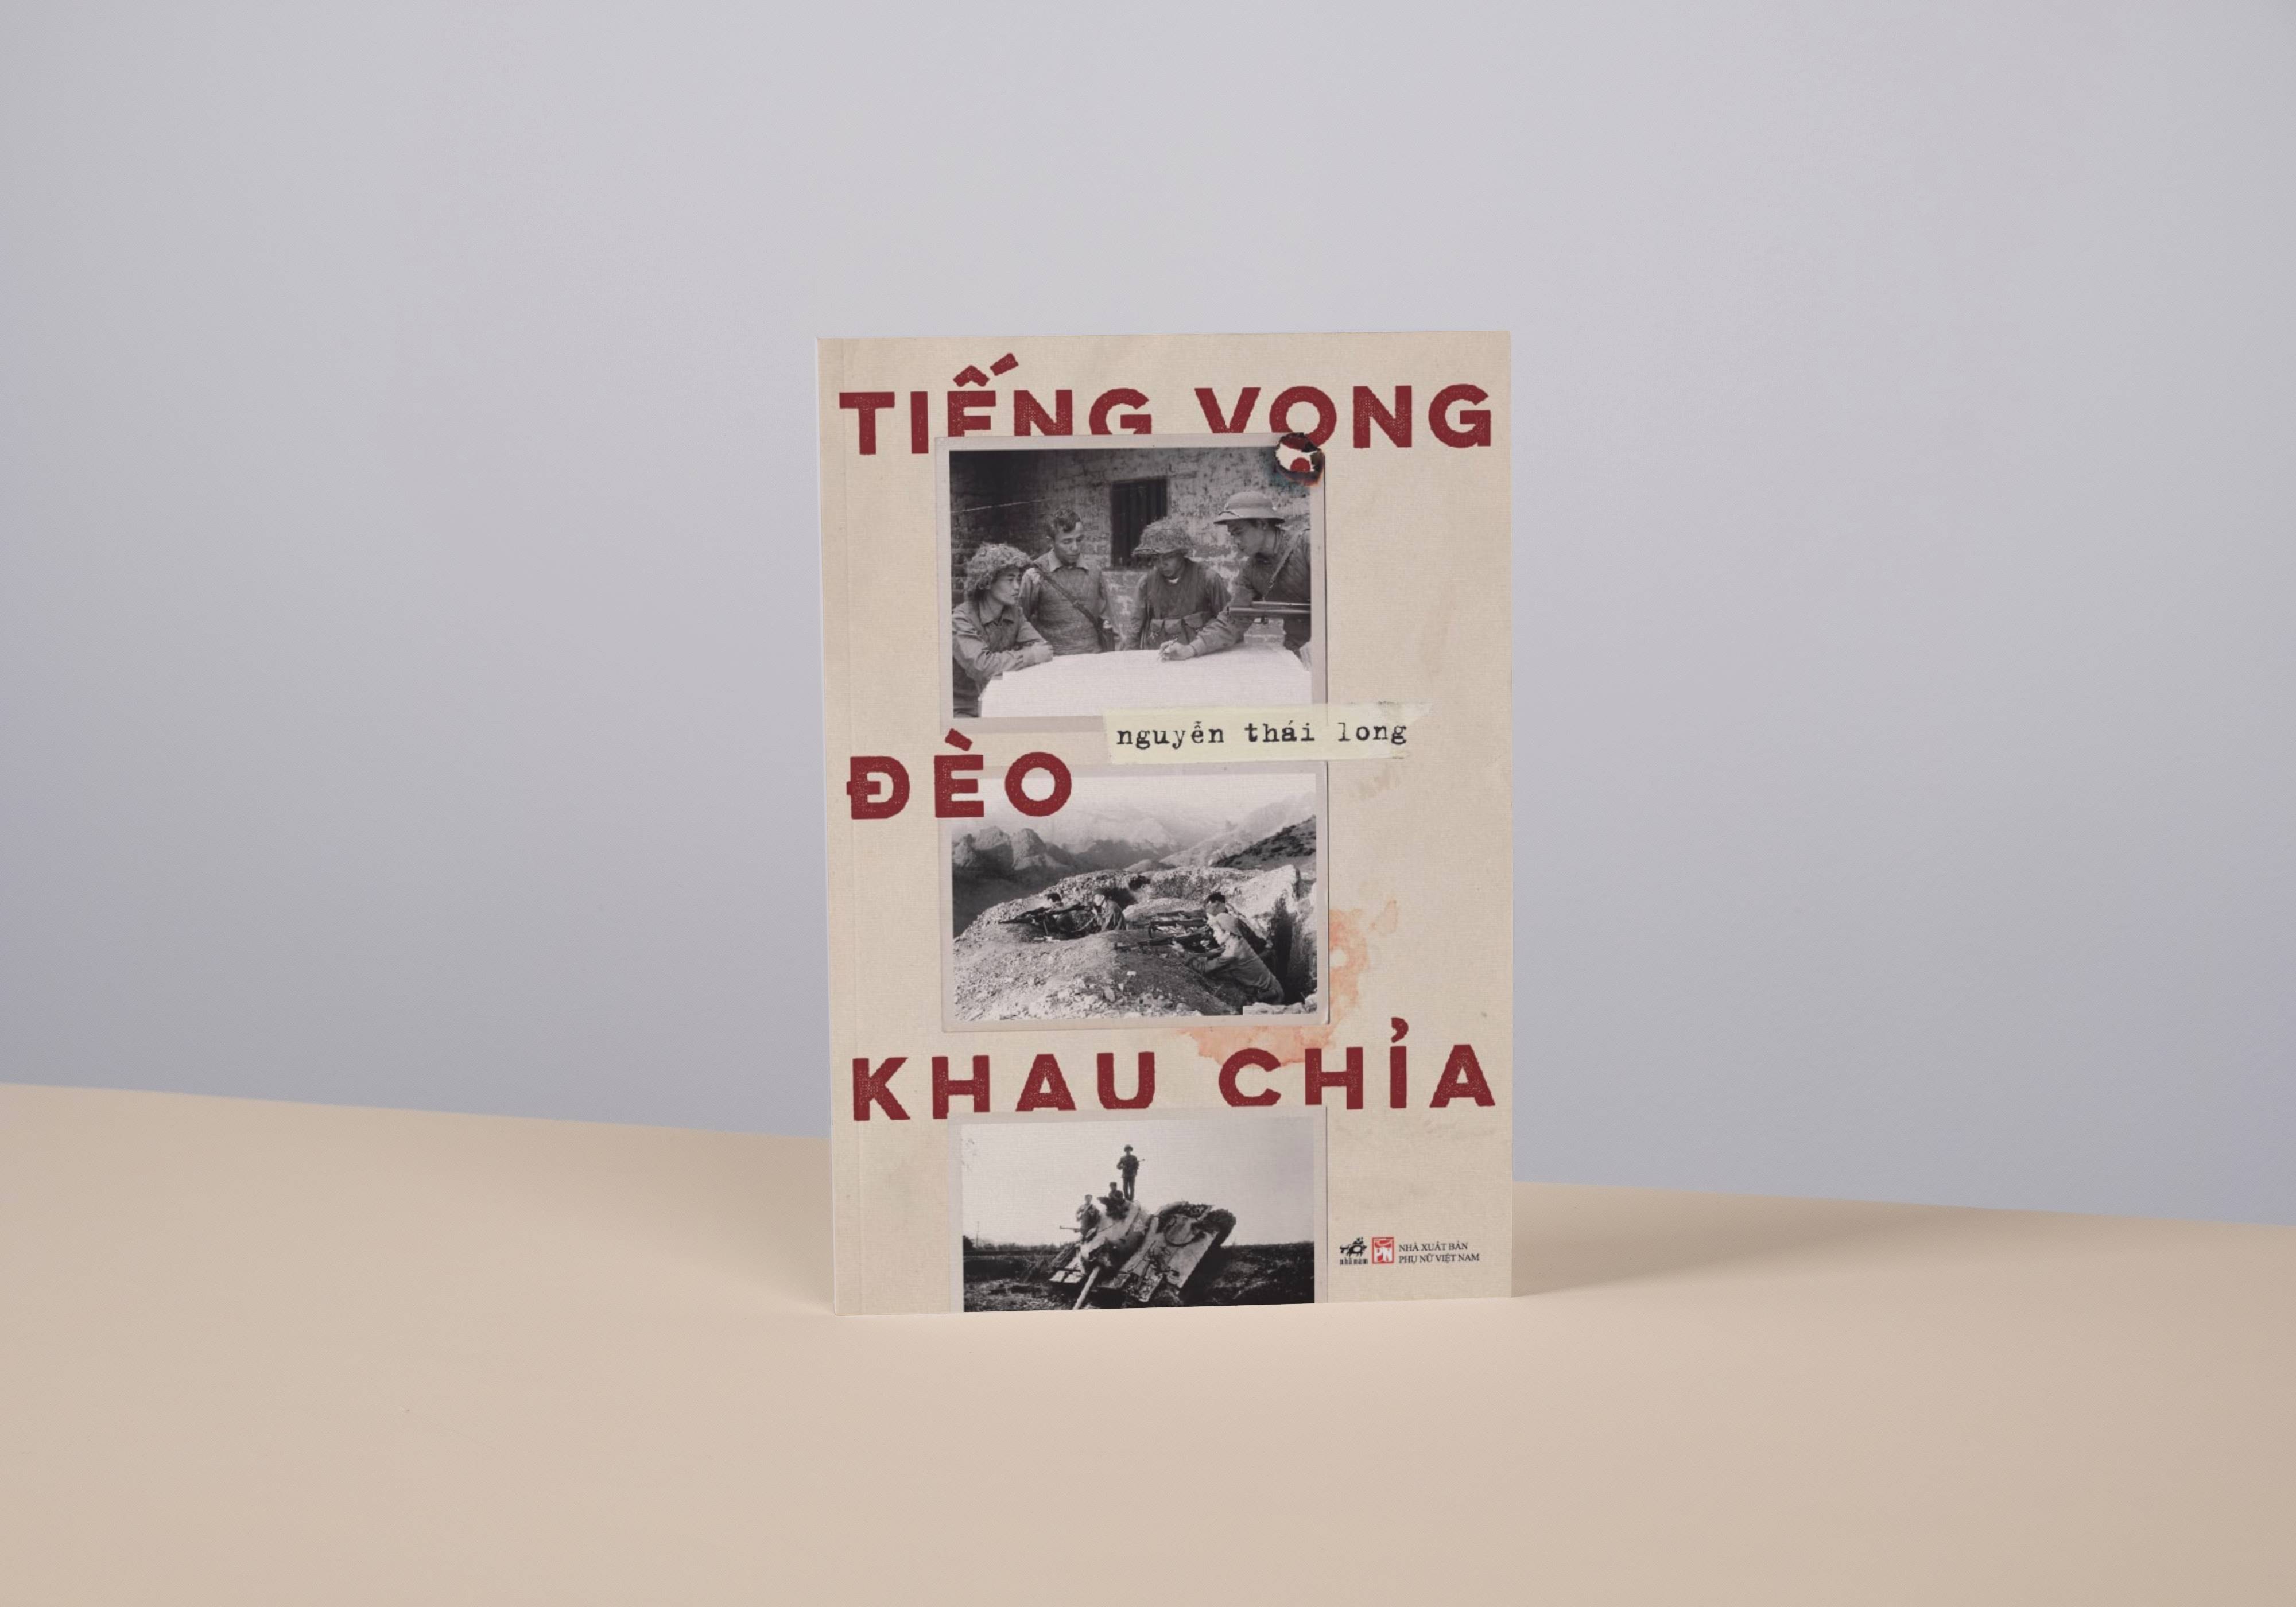 Trò chuyện về cuốn sách “Tiếng vọng đèo Khau Chỉa”: Ký ức của người lính về cuộc chiến bảo vệ biên cương phía Bắc - 3